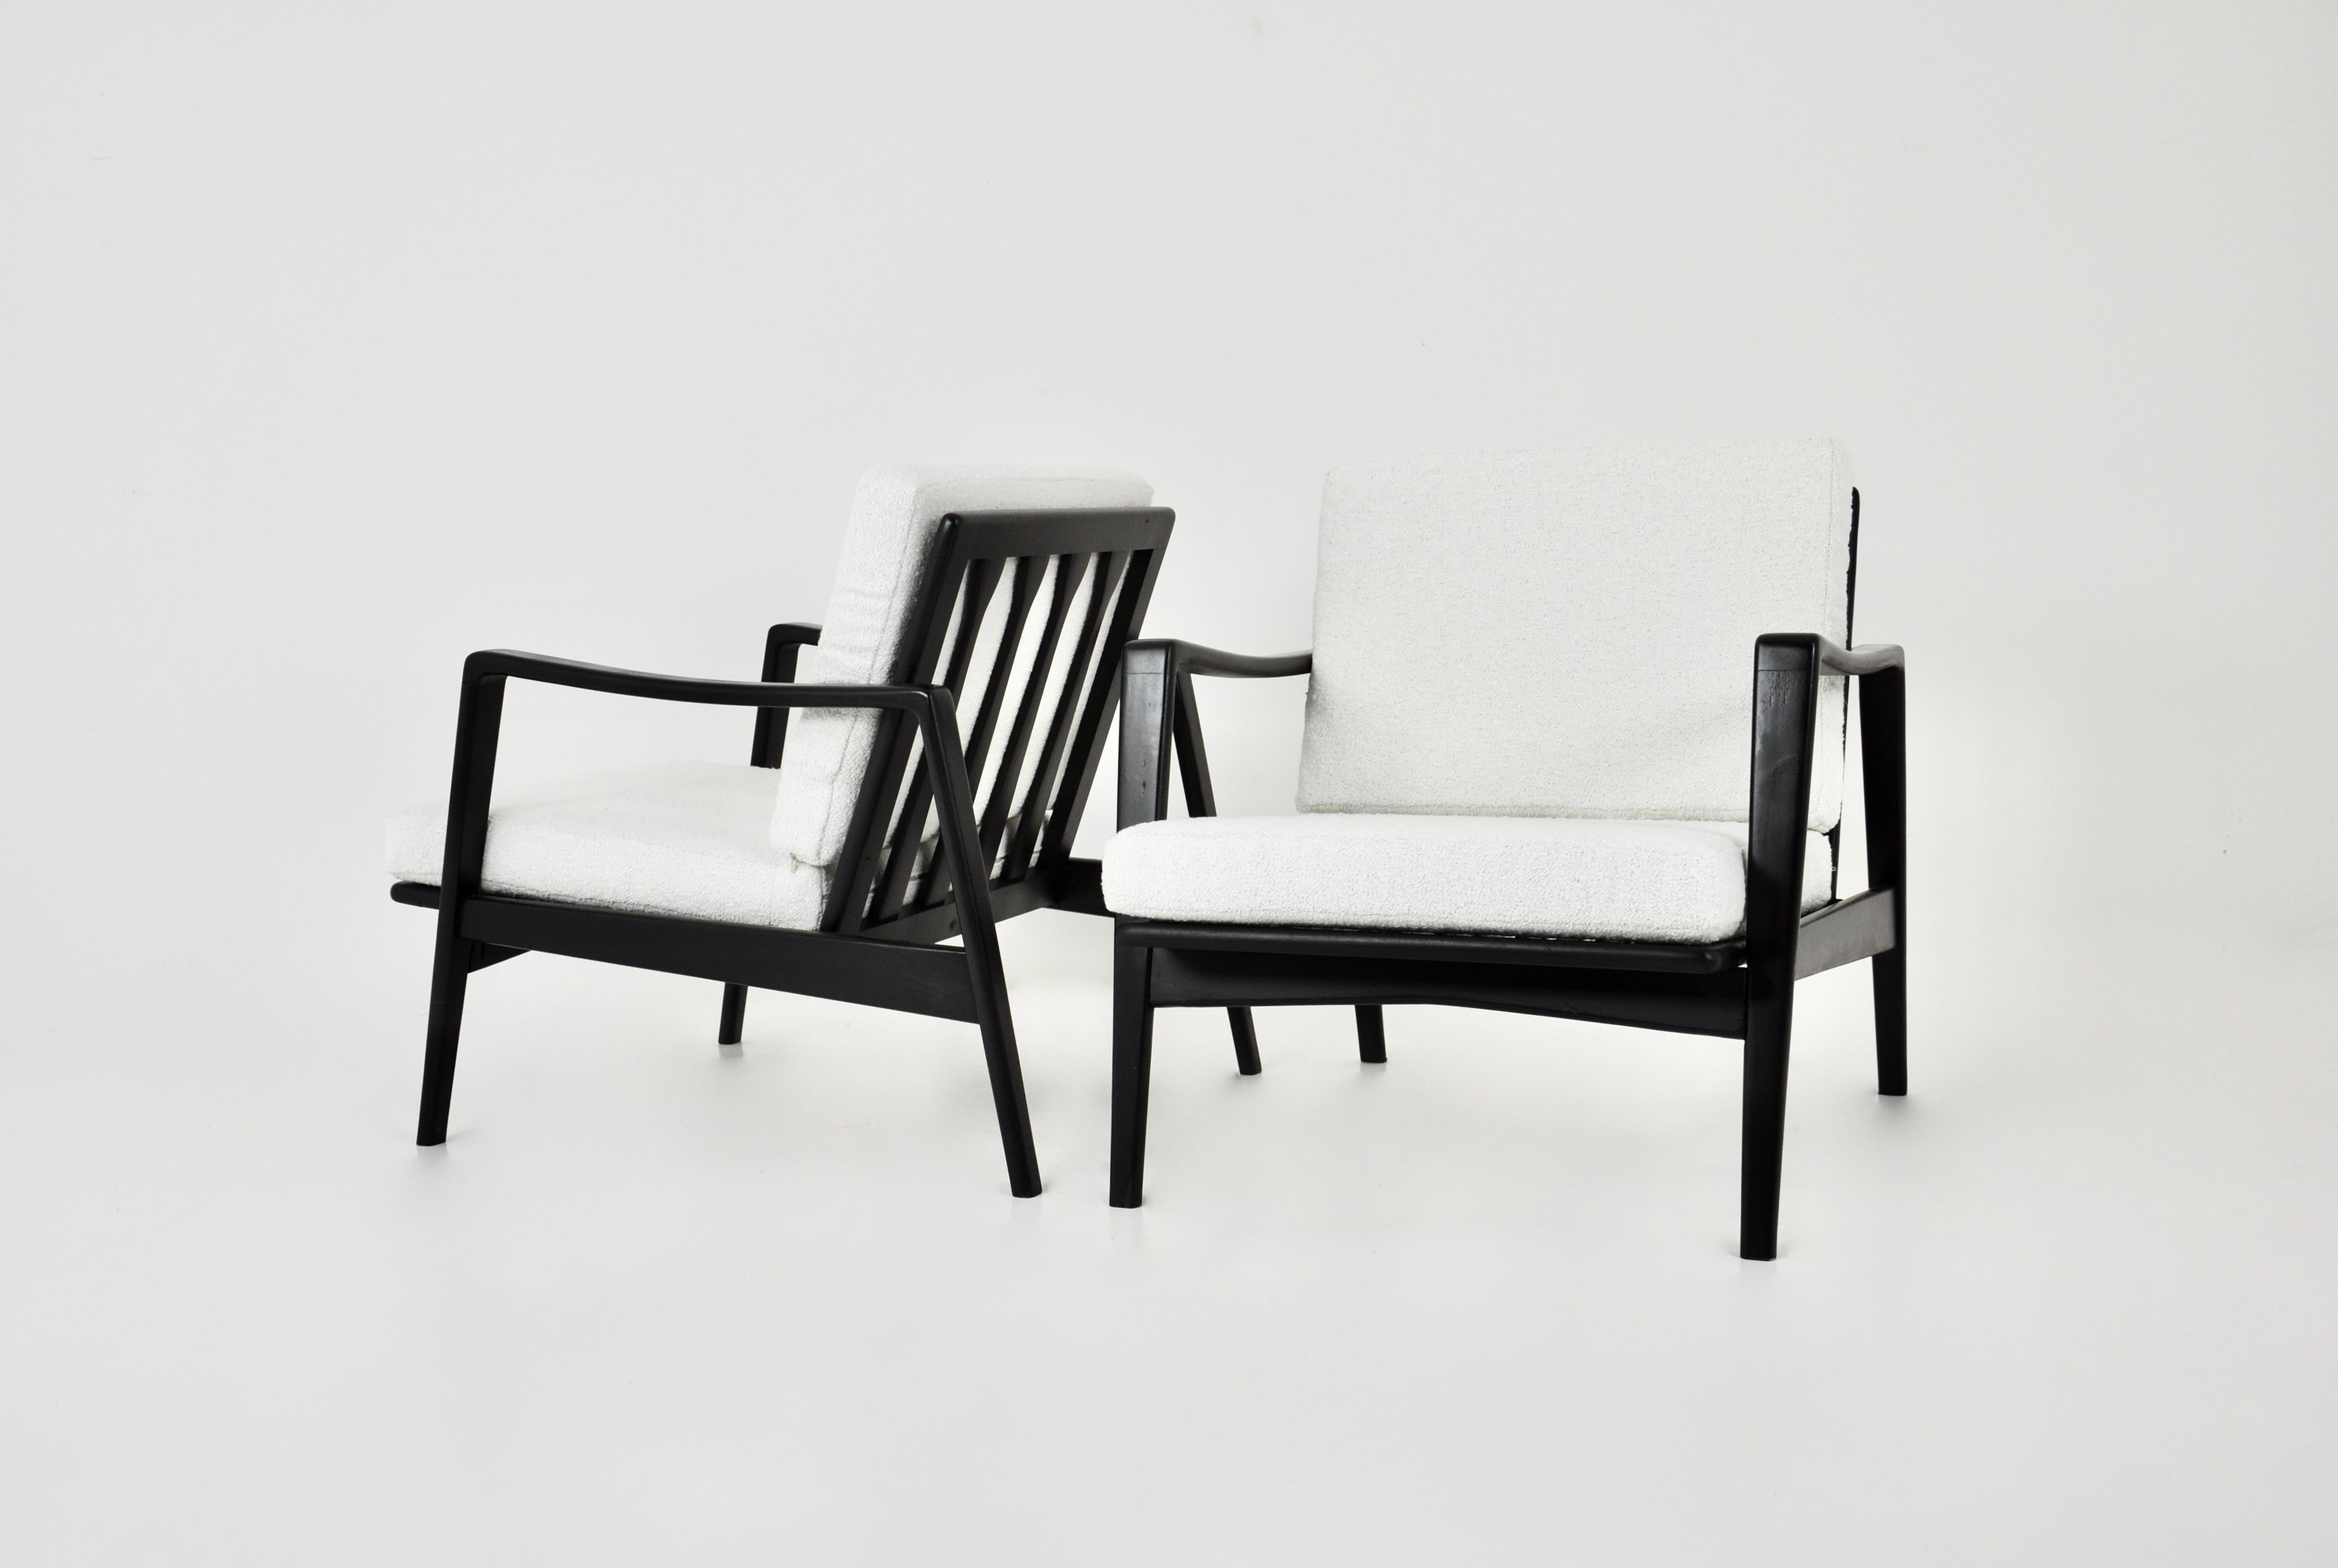 Paire de fauteuils en teck. Assise en mousse recouverte de tissu couleur vanille avec housse amovible. Dimensions : Hauteur de l'assise 38 cm. Légère usure due au temps et à l'utilisation des chaises.